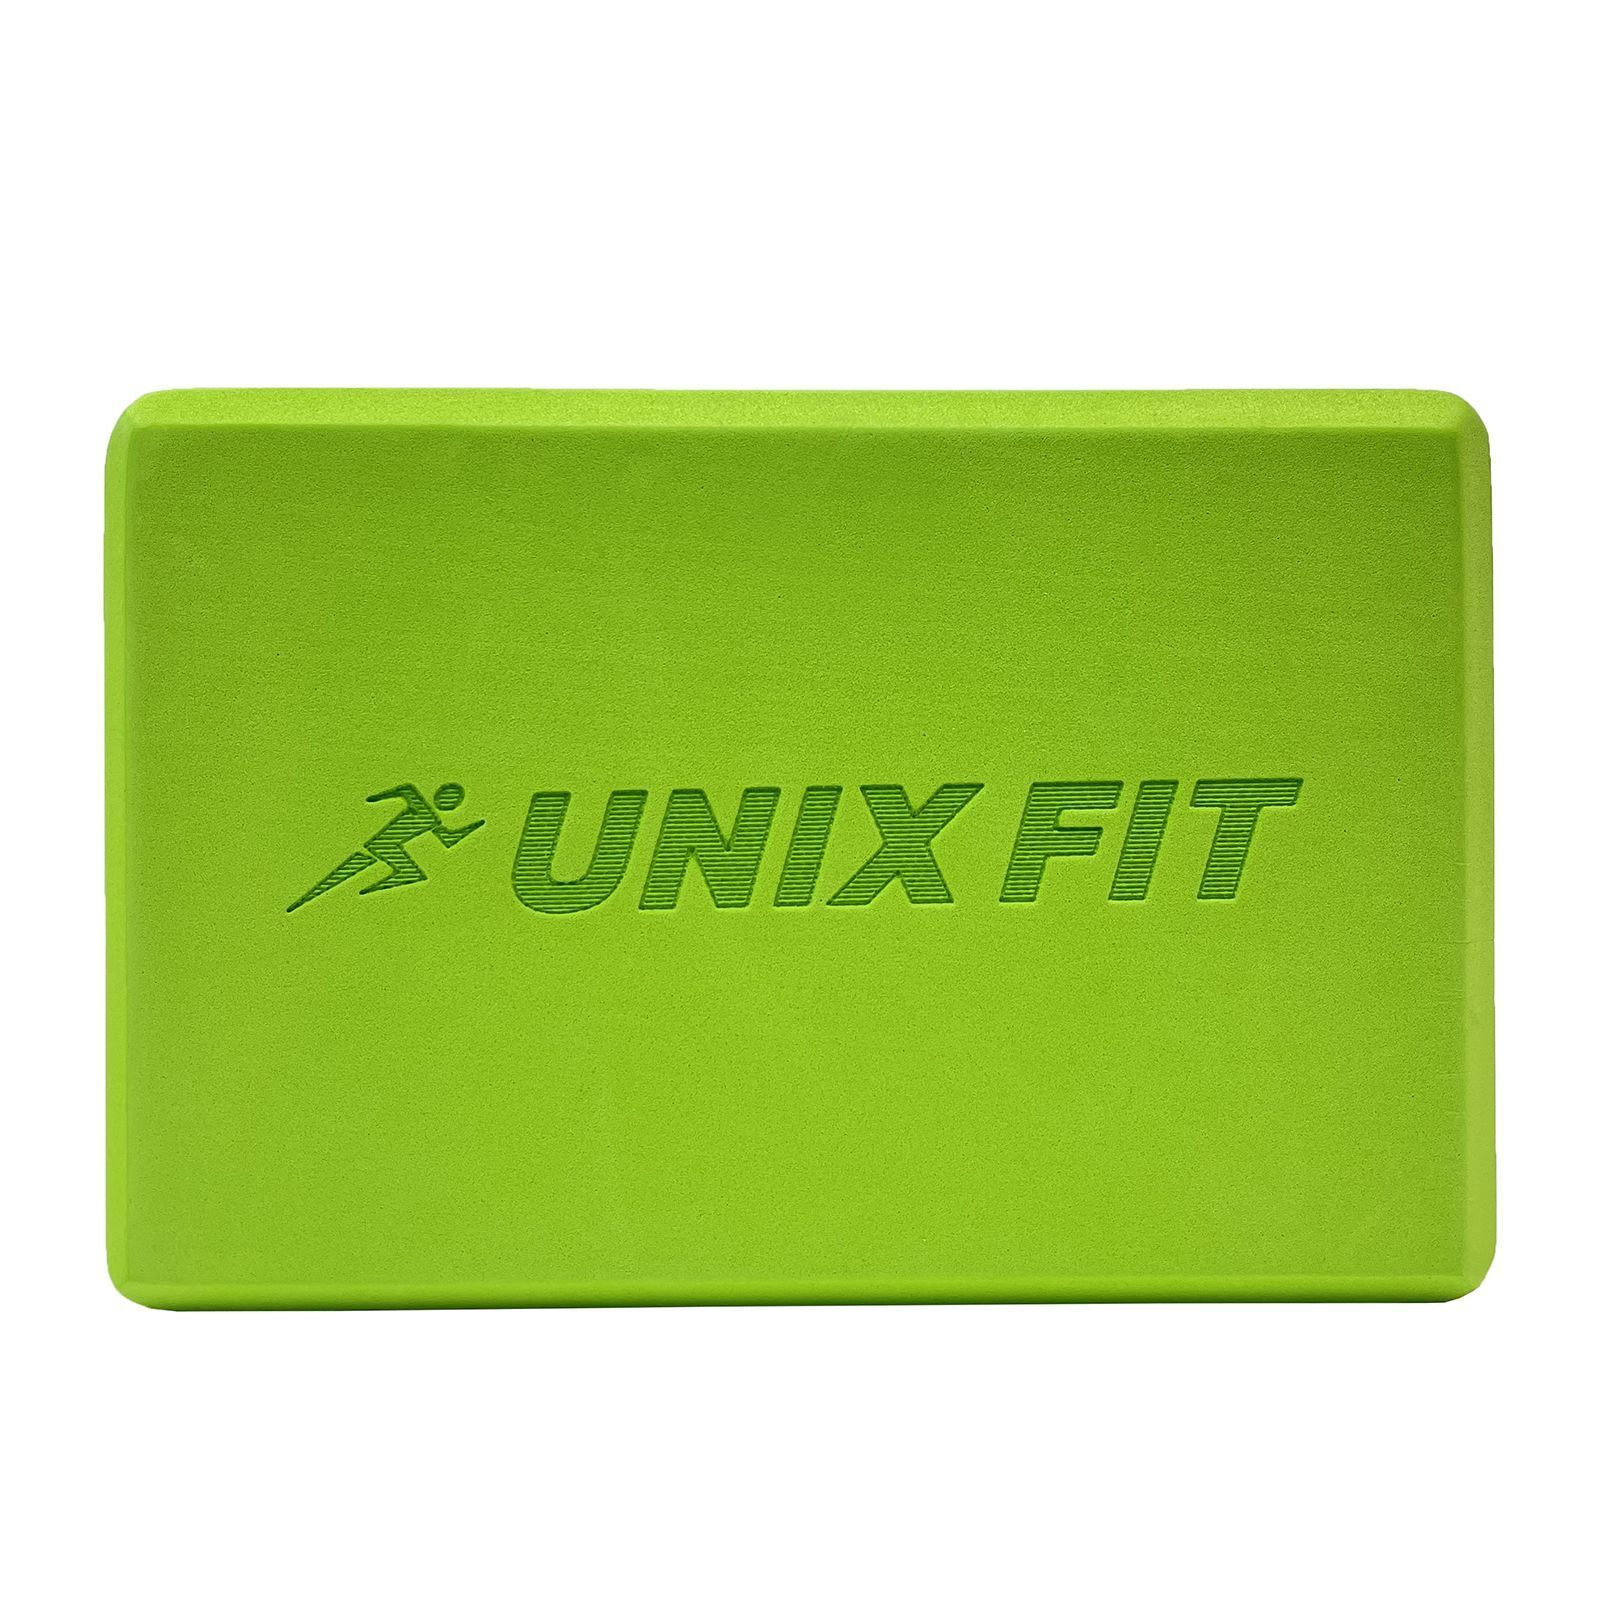 Блок для йоги и фитнеса UNIX Fit (200 г) 23 х 15 х 7 см, 1 шт, зеленый UNIX Fit™ Блоки для йоги и фитнеса